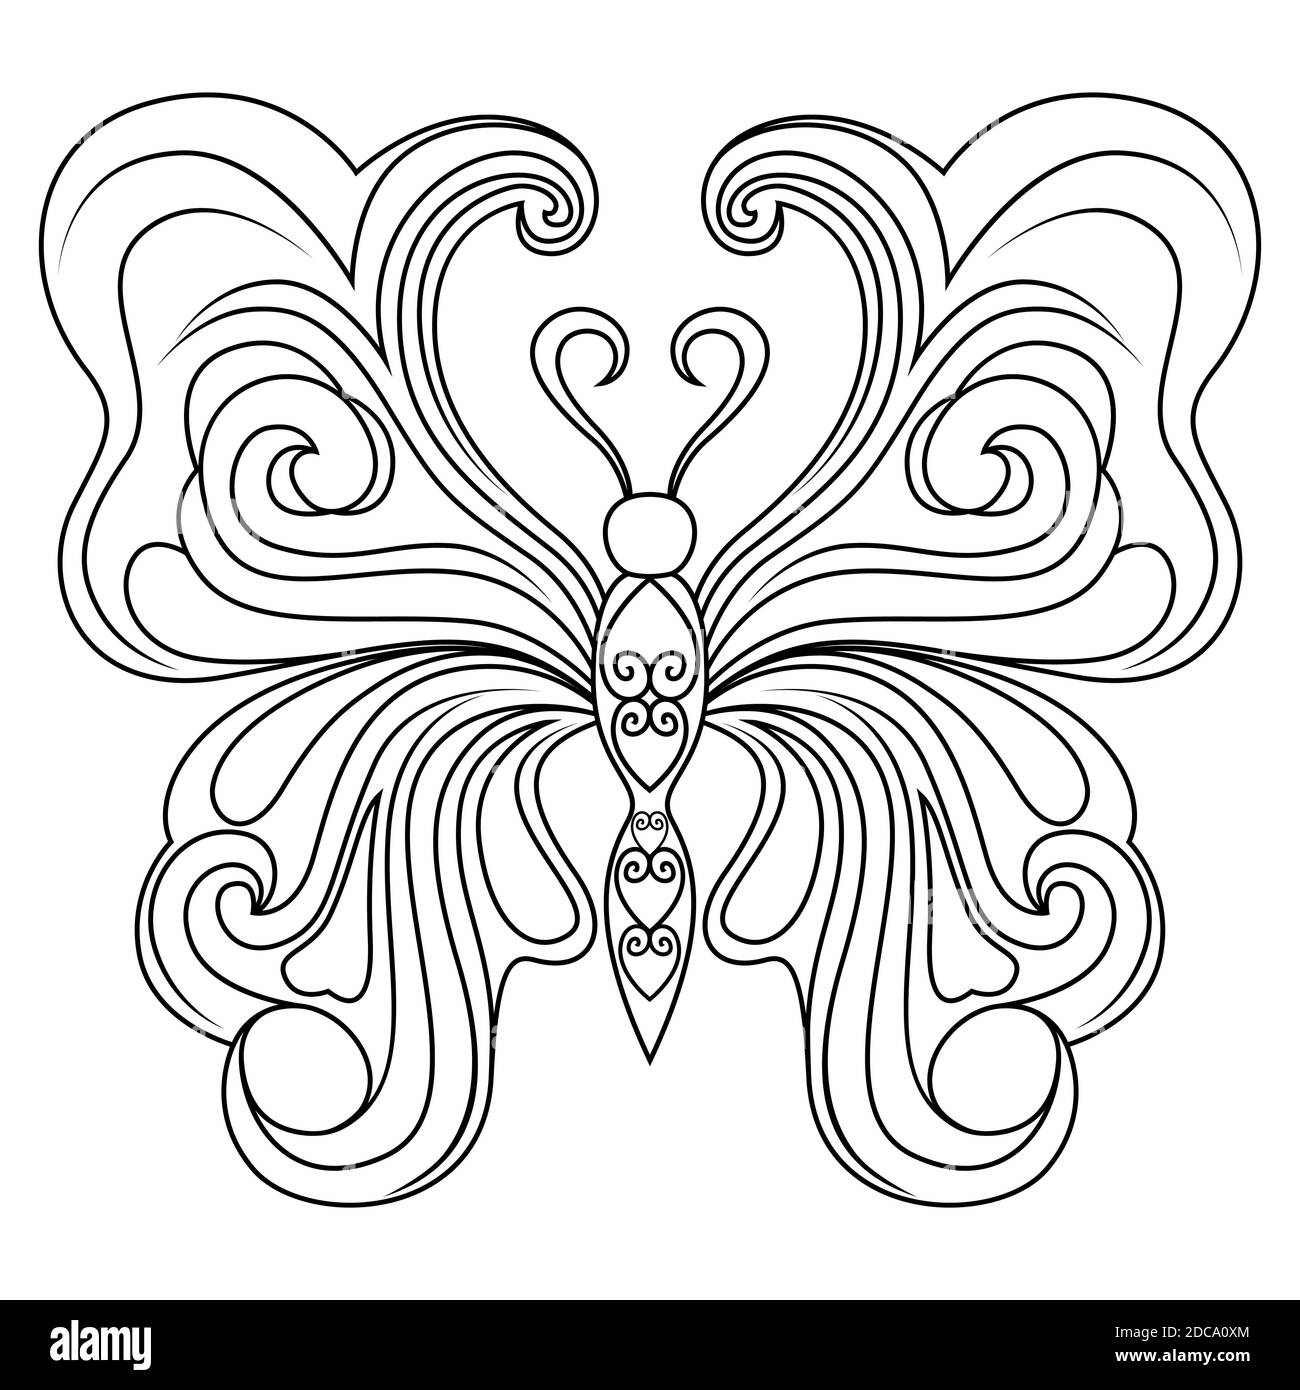 Pochoirs noirs décoratifs de beau papillon isolés sur fond blanc, dessin à la main illustration vectorielle Illustration de Vecteur